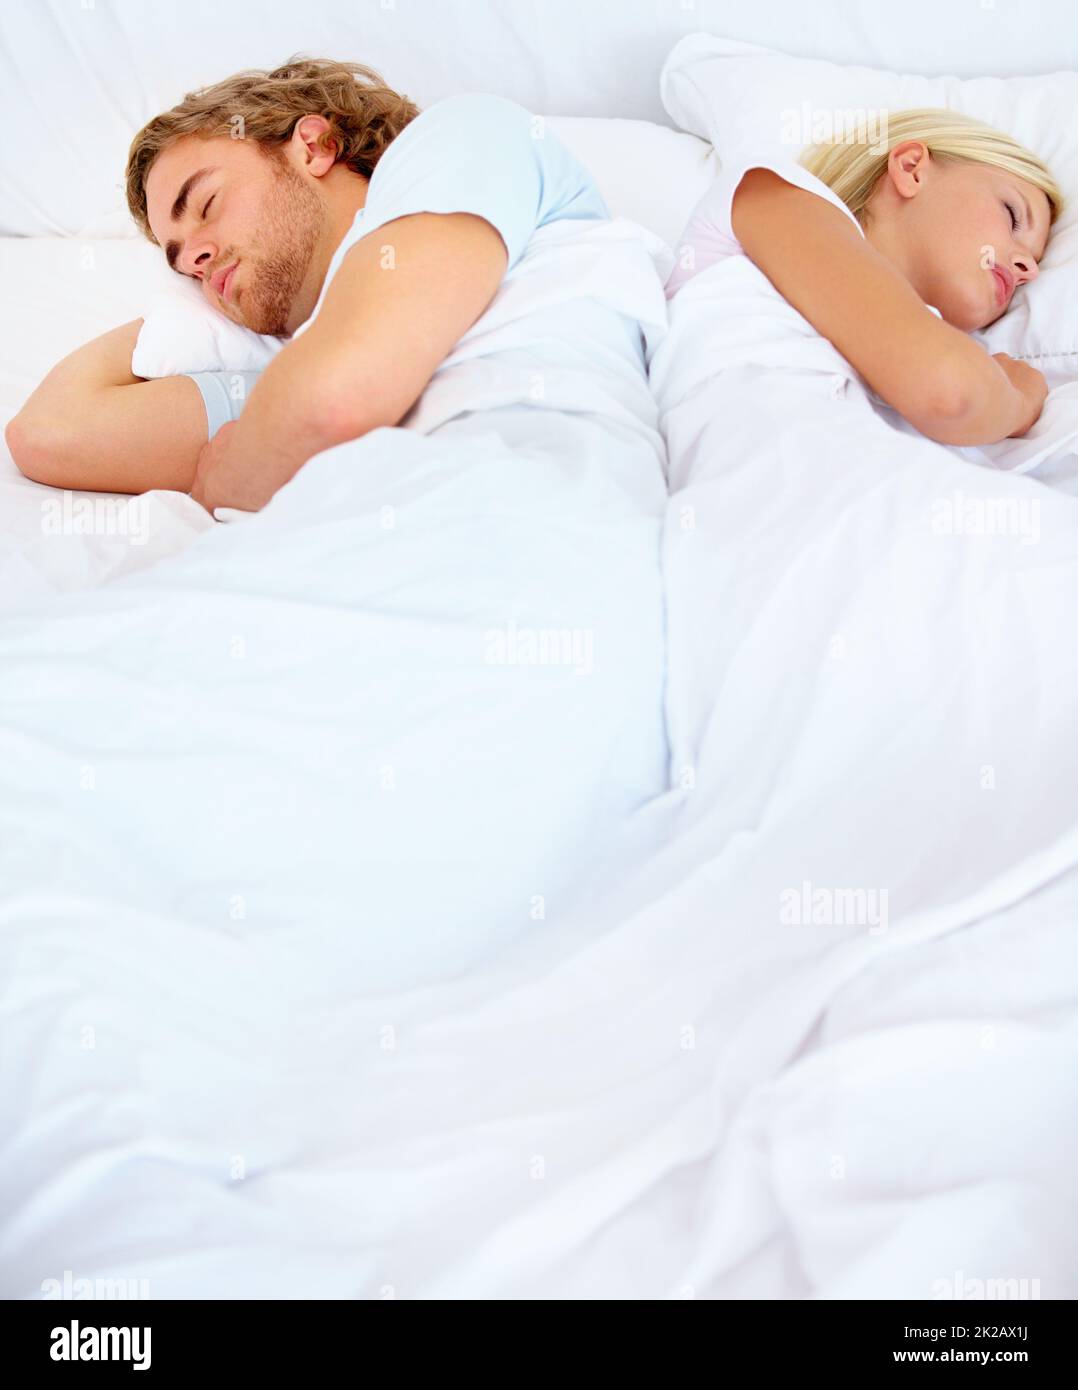 Im Widerspruch zueinander. Ein junges Paar schläft im Bett von hinten bis hinten. Stockfoto